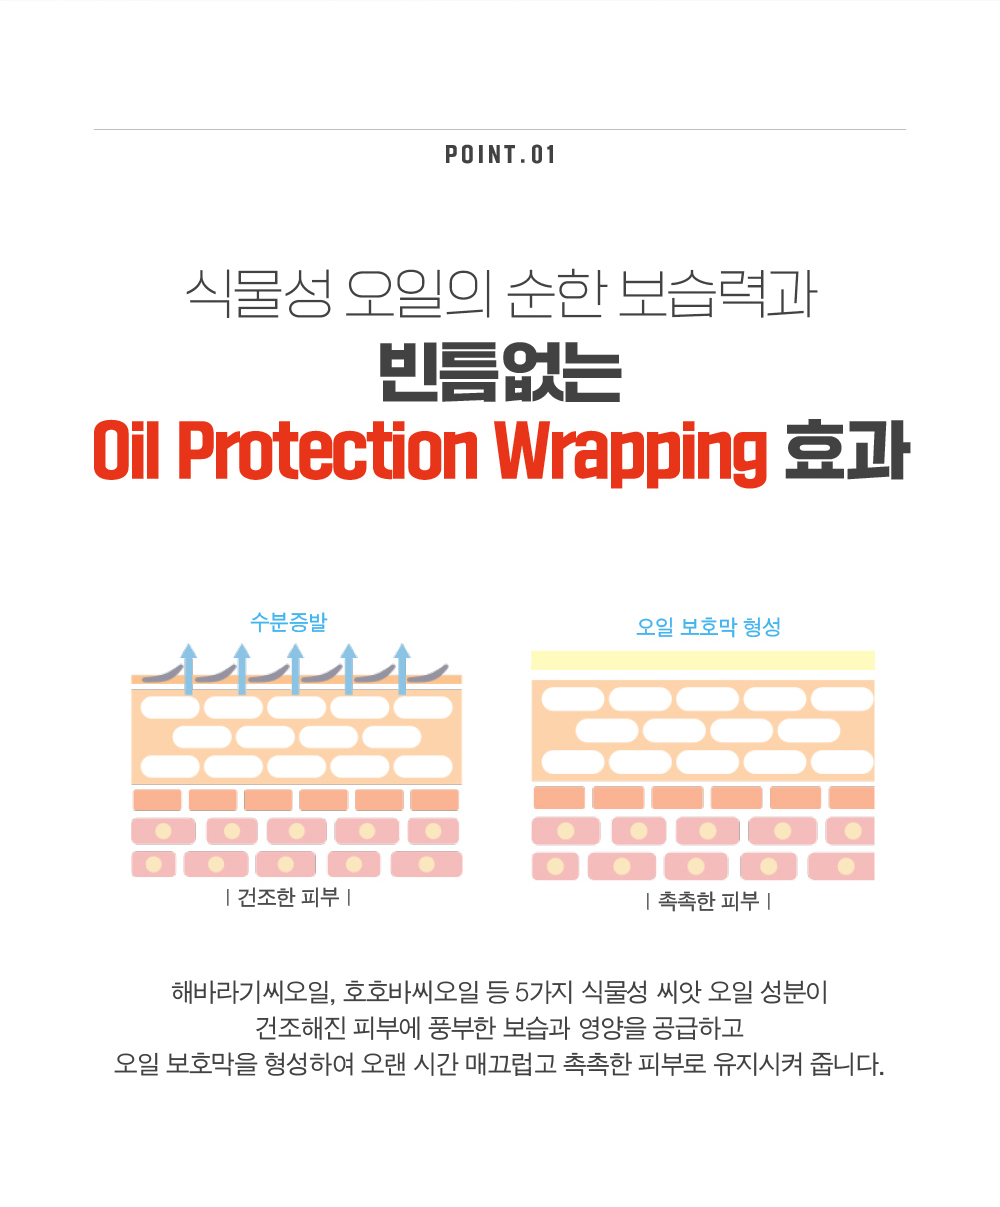 식물성 오일의 순한 보습력과 빈틈없는 Oil Protection Wrapping 효과